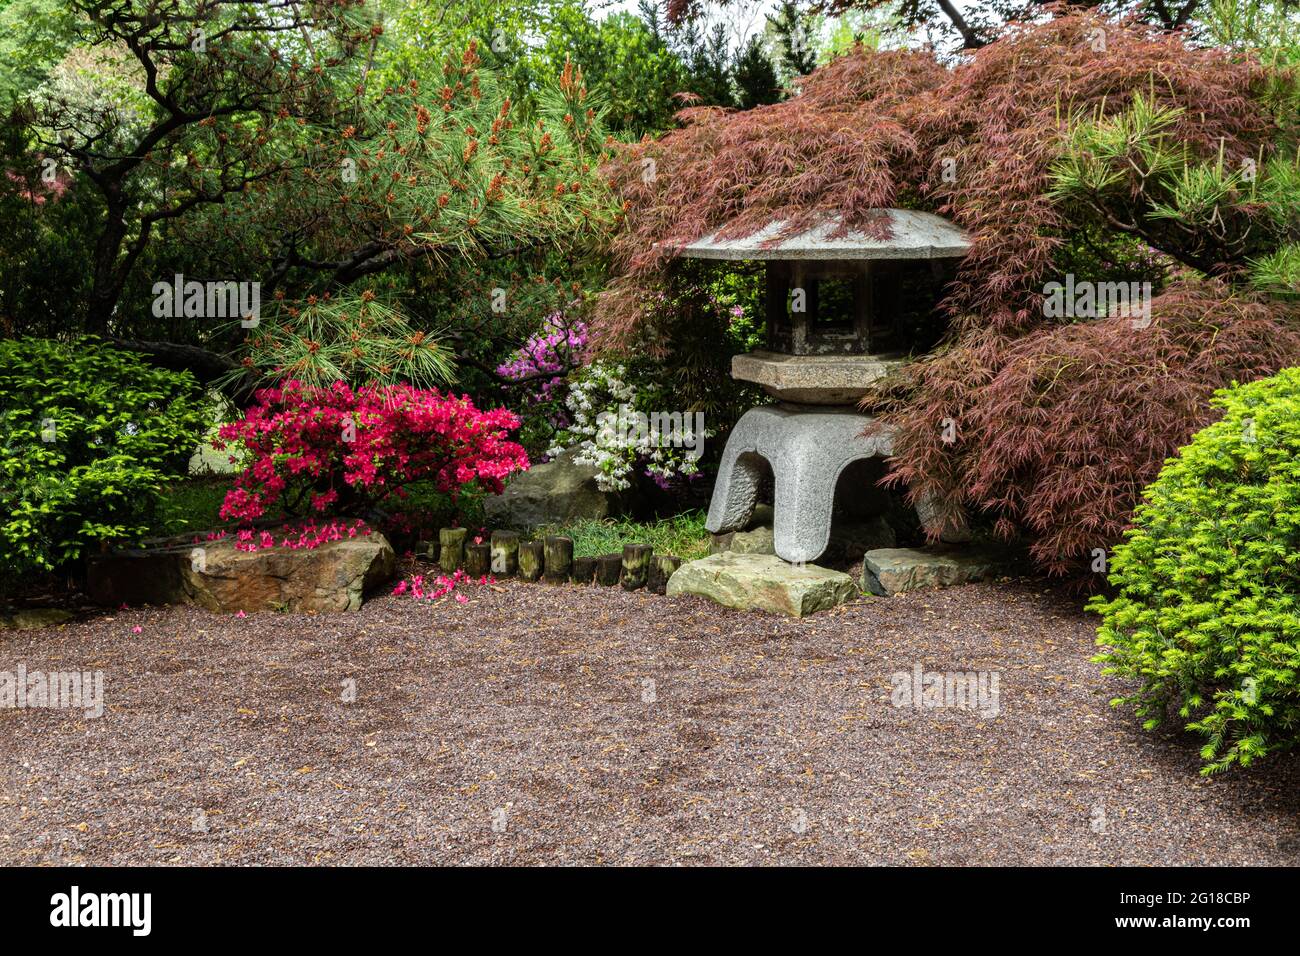 Jardin botanique japonais, dans les jardins botaniques du Missouri, St. Louis. Lanterne en pierre; pins, arbustes et fleurs. Gravier en premier plan. Banque D'Images